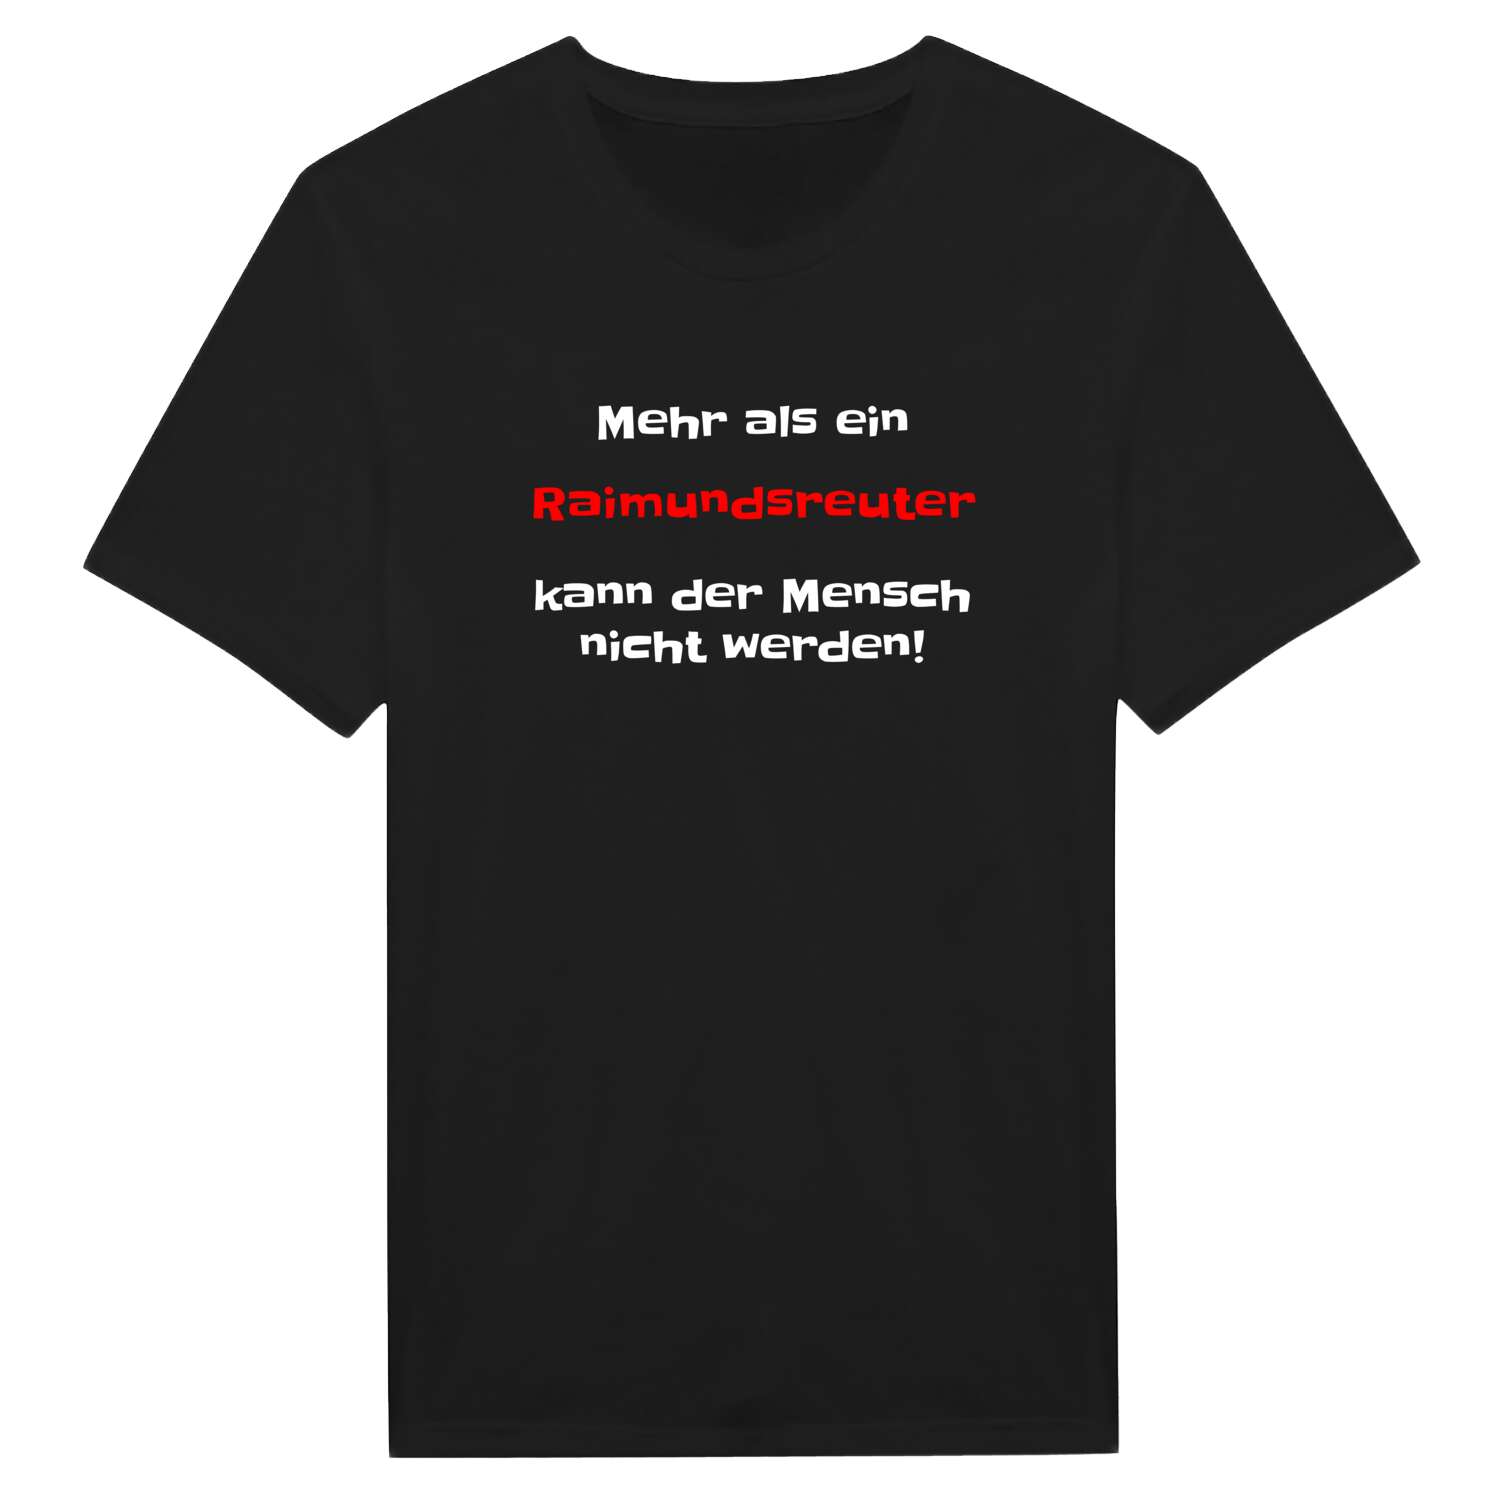 Raimundsreut T-Shirt »Mehr als ein«